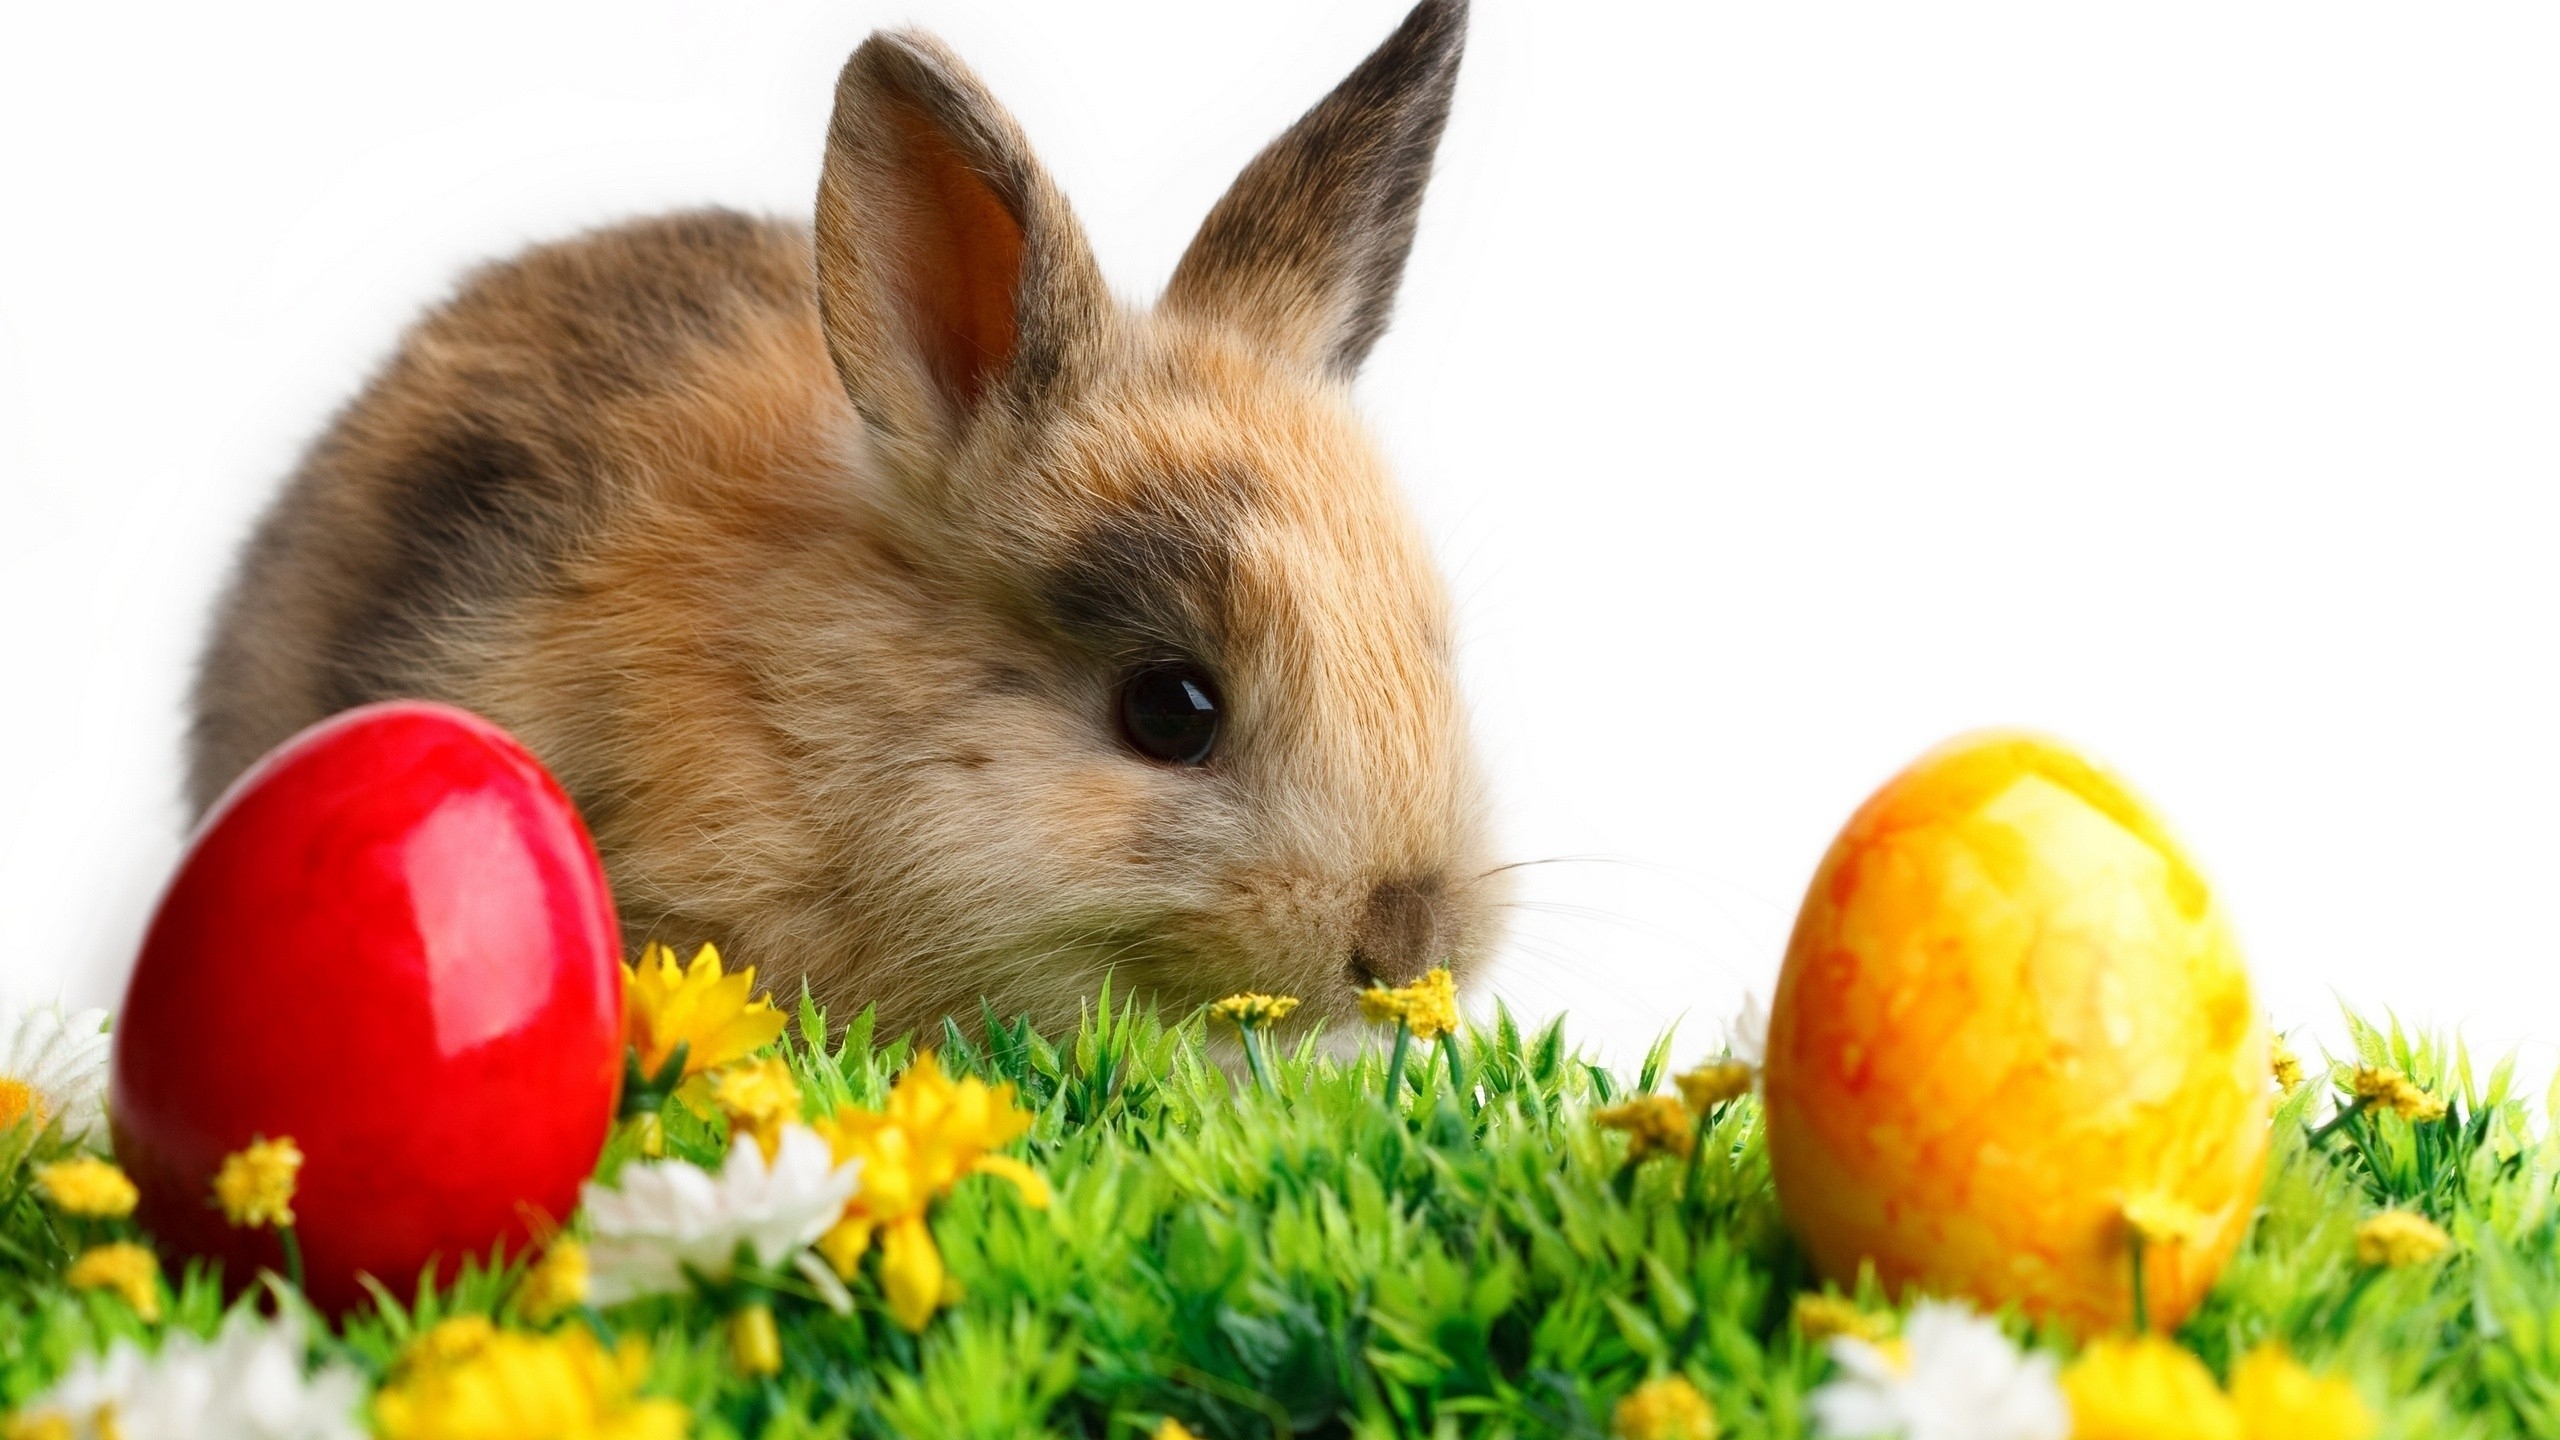 Cute Little Easter Rabbit for 2560x1440 HDTV resolution